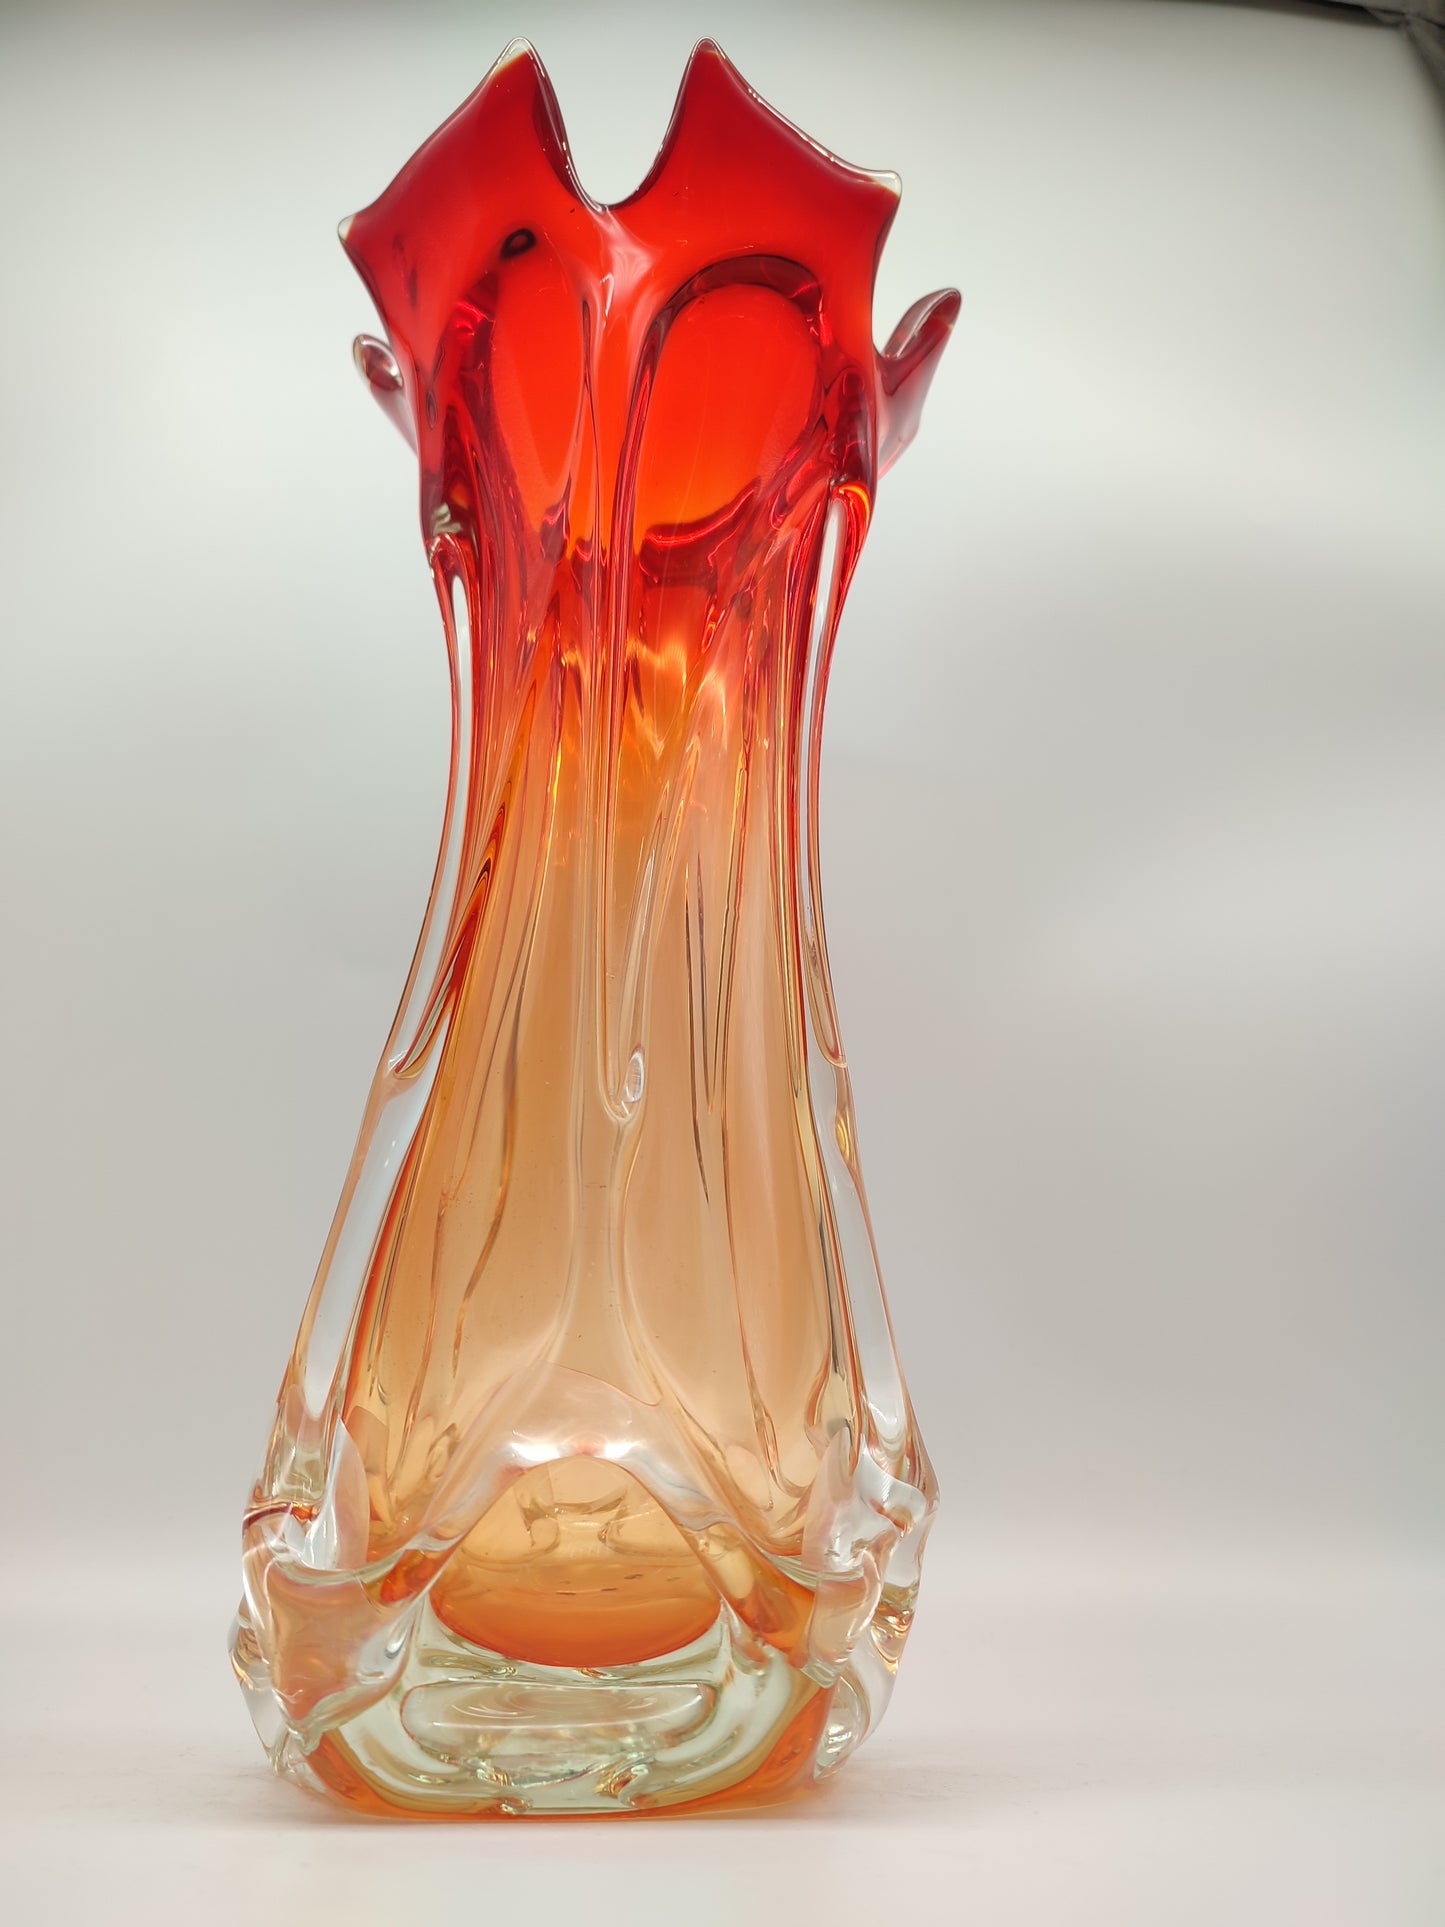 69184 Vaso in vetro con sfumatura rossa e arancio